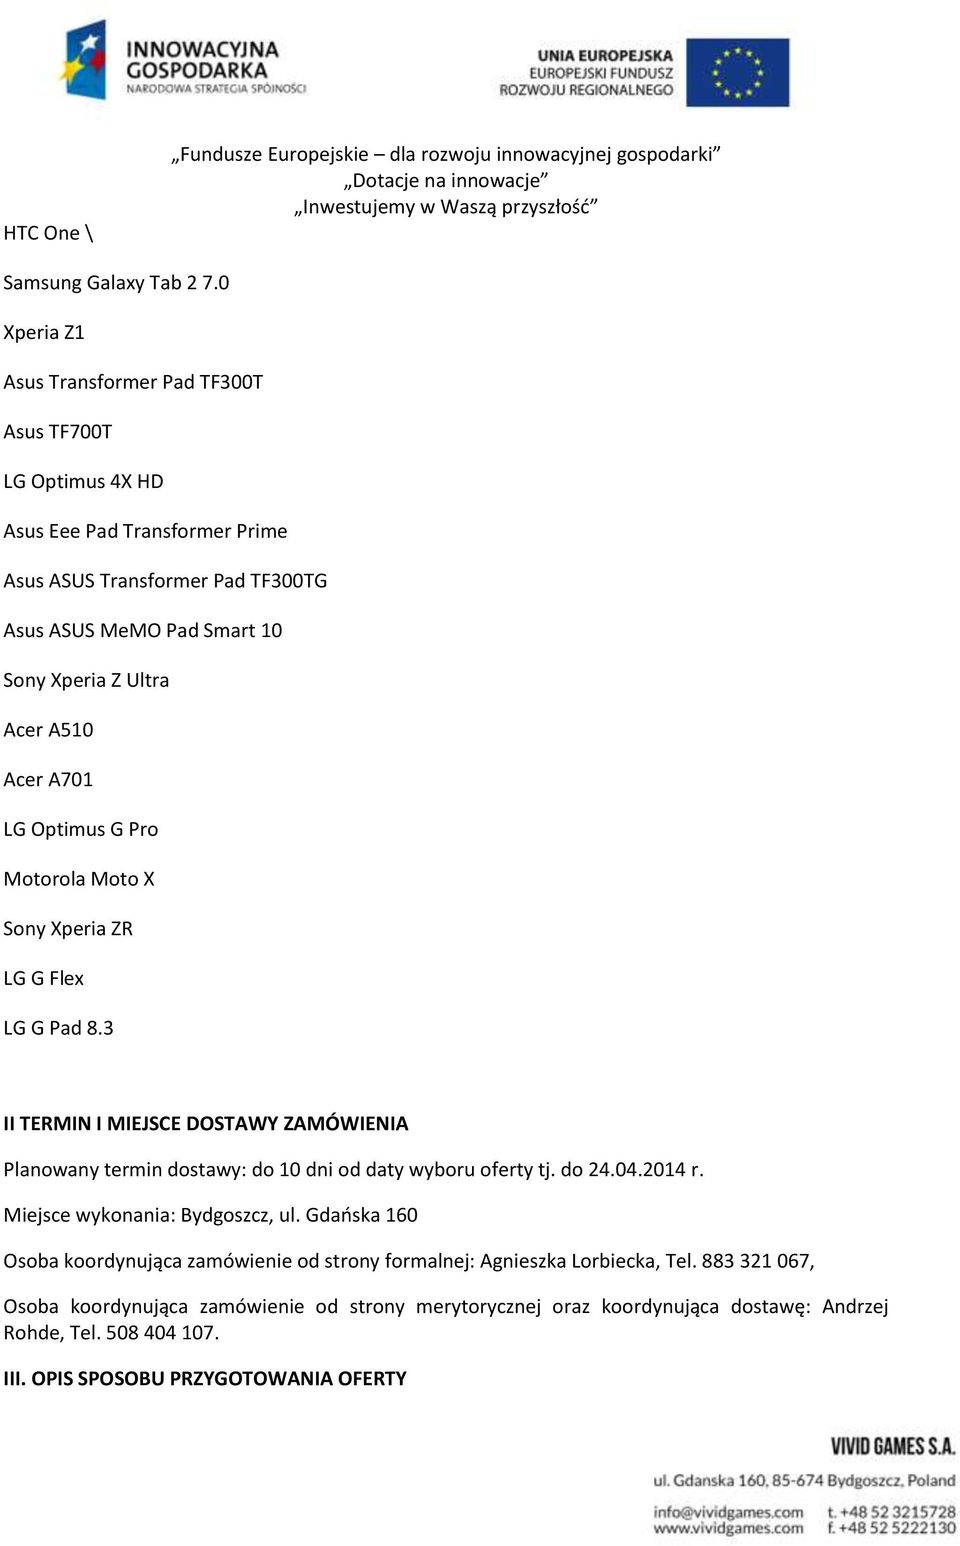 Acer A701 LG Optimus G Pro Motorola Moto X Sony Xperia ZR LG G Flex LG G Pad 8.3 II TERMIN I MIEJSCE DOSTAWY ZAMÓWIENIA Planowany termin dostawy: do 10 dni od daty wyboru oferty tj. do 24.04.